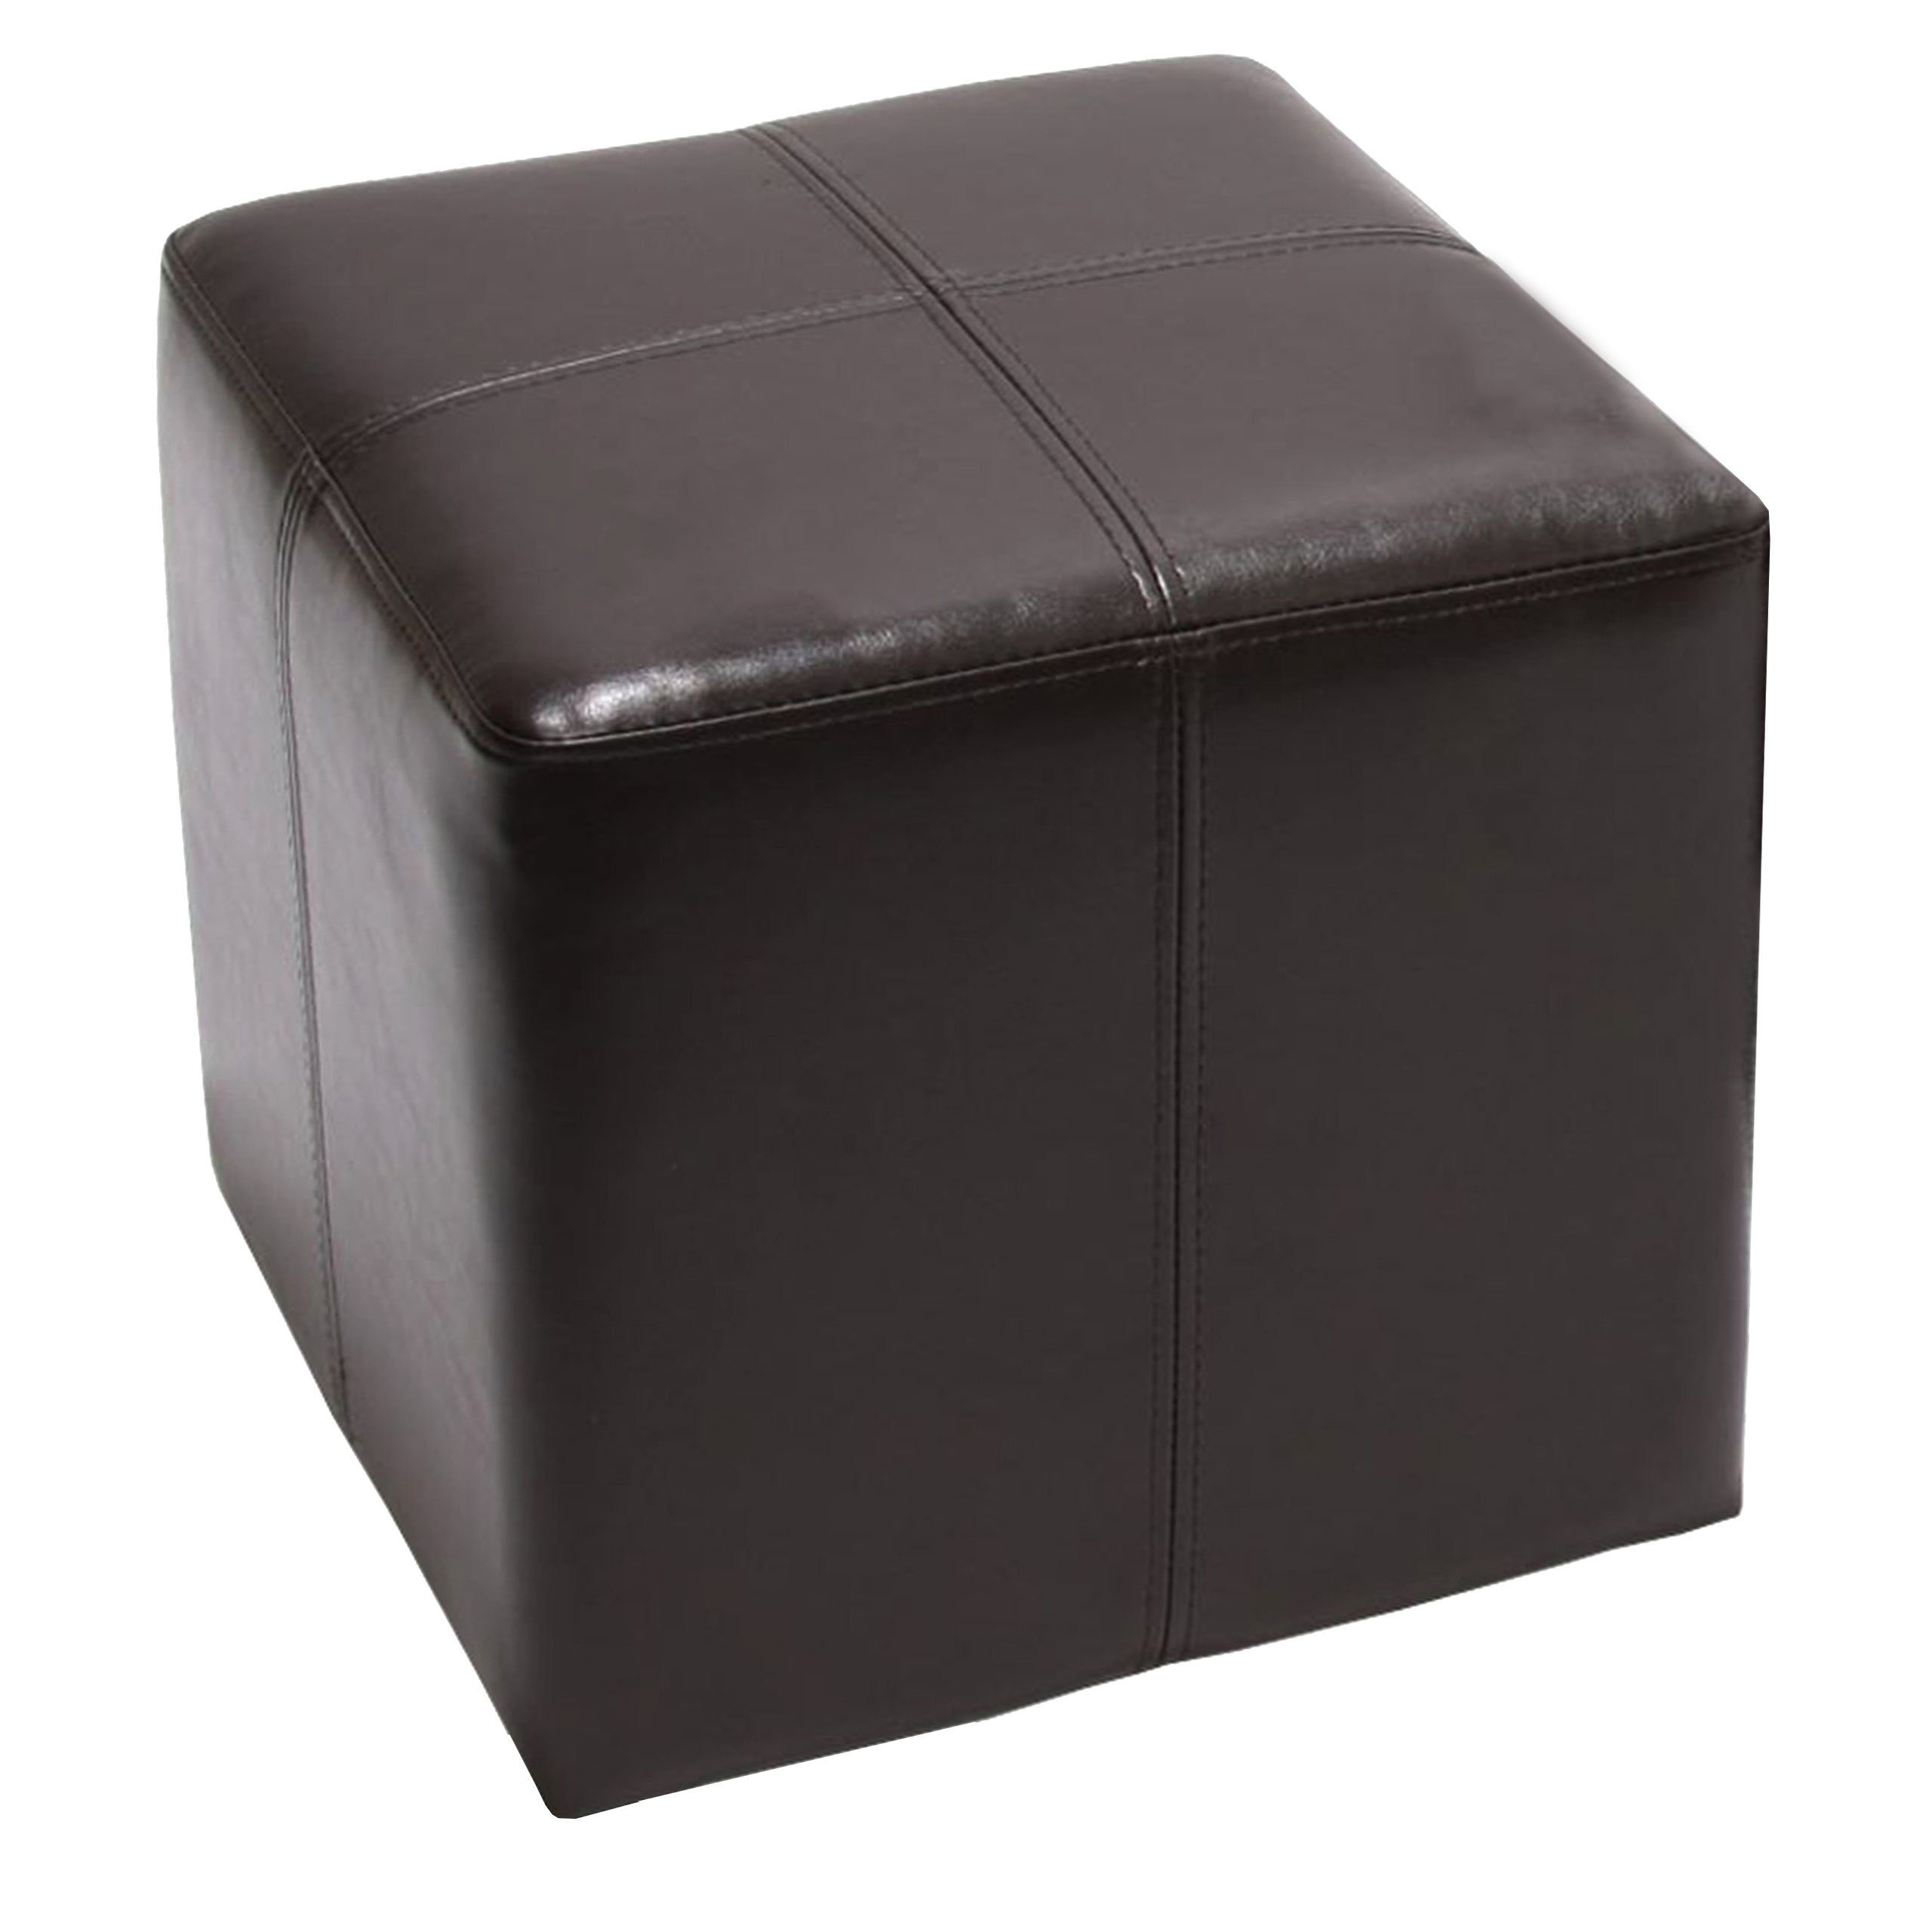 KUBUS Bequemer Sitzwürfel, Material Kunstleder, 39x34x34 cm  Bandscheibenwürfel braun